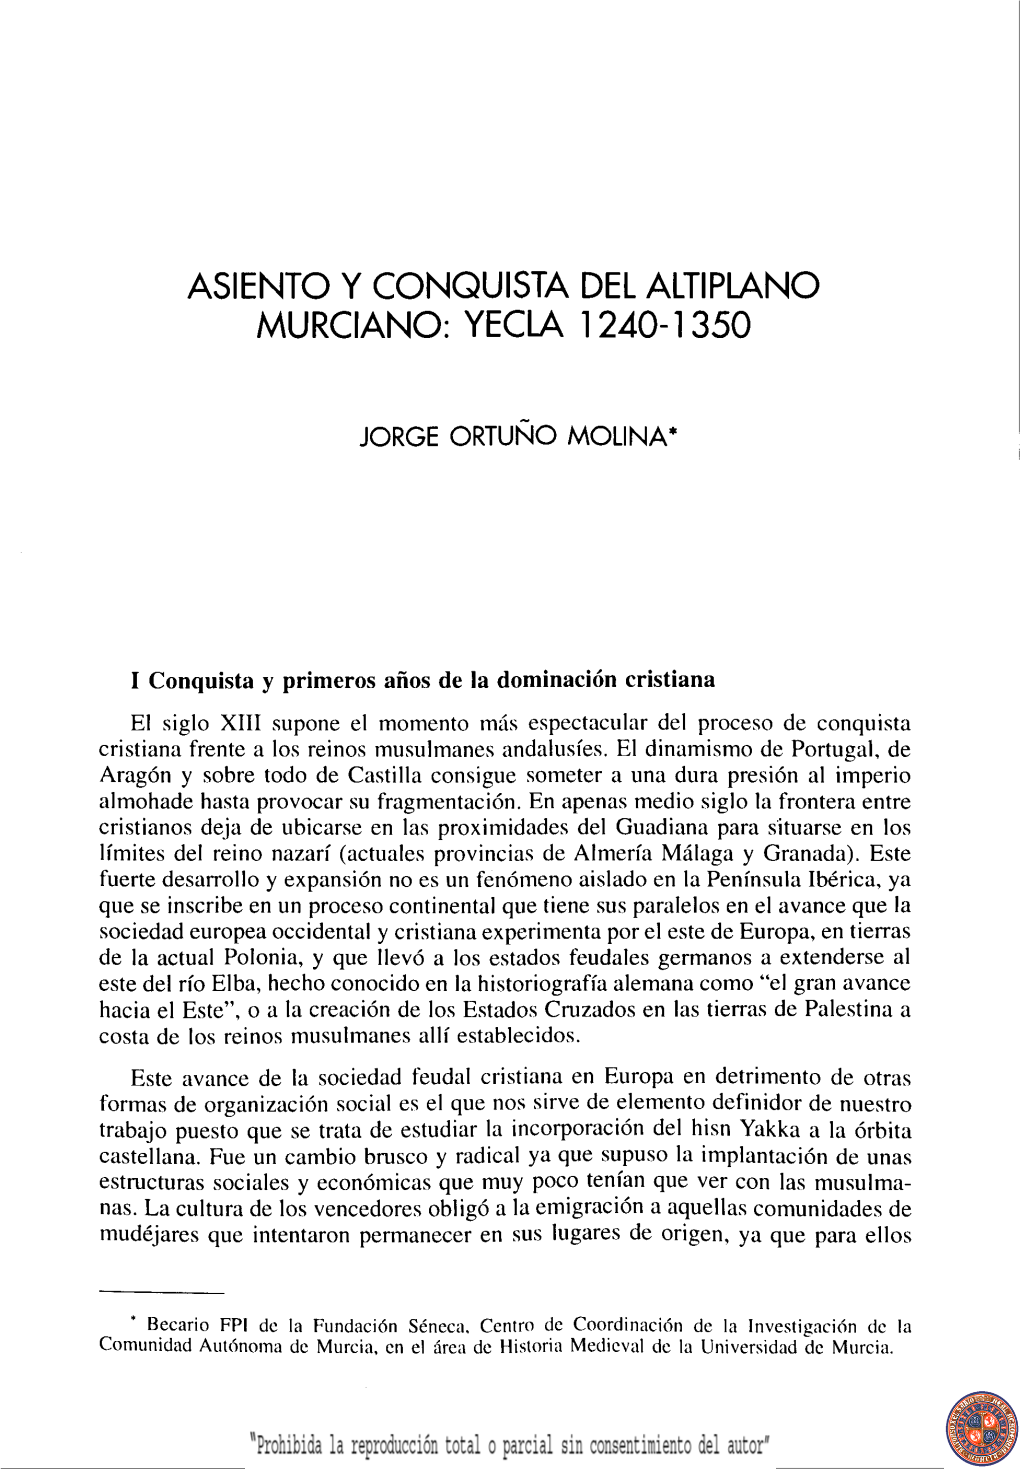 "Asiento Y Conquista Del Altiplano Murciano: Yecla 1240-1350"